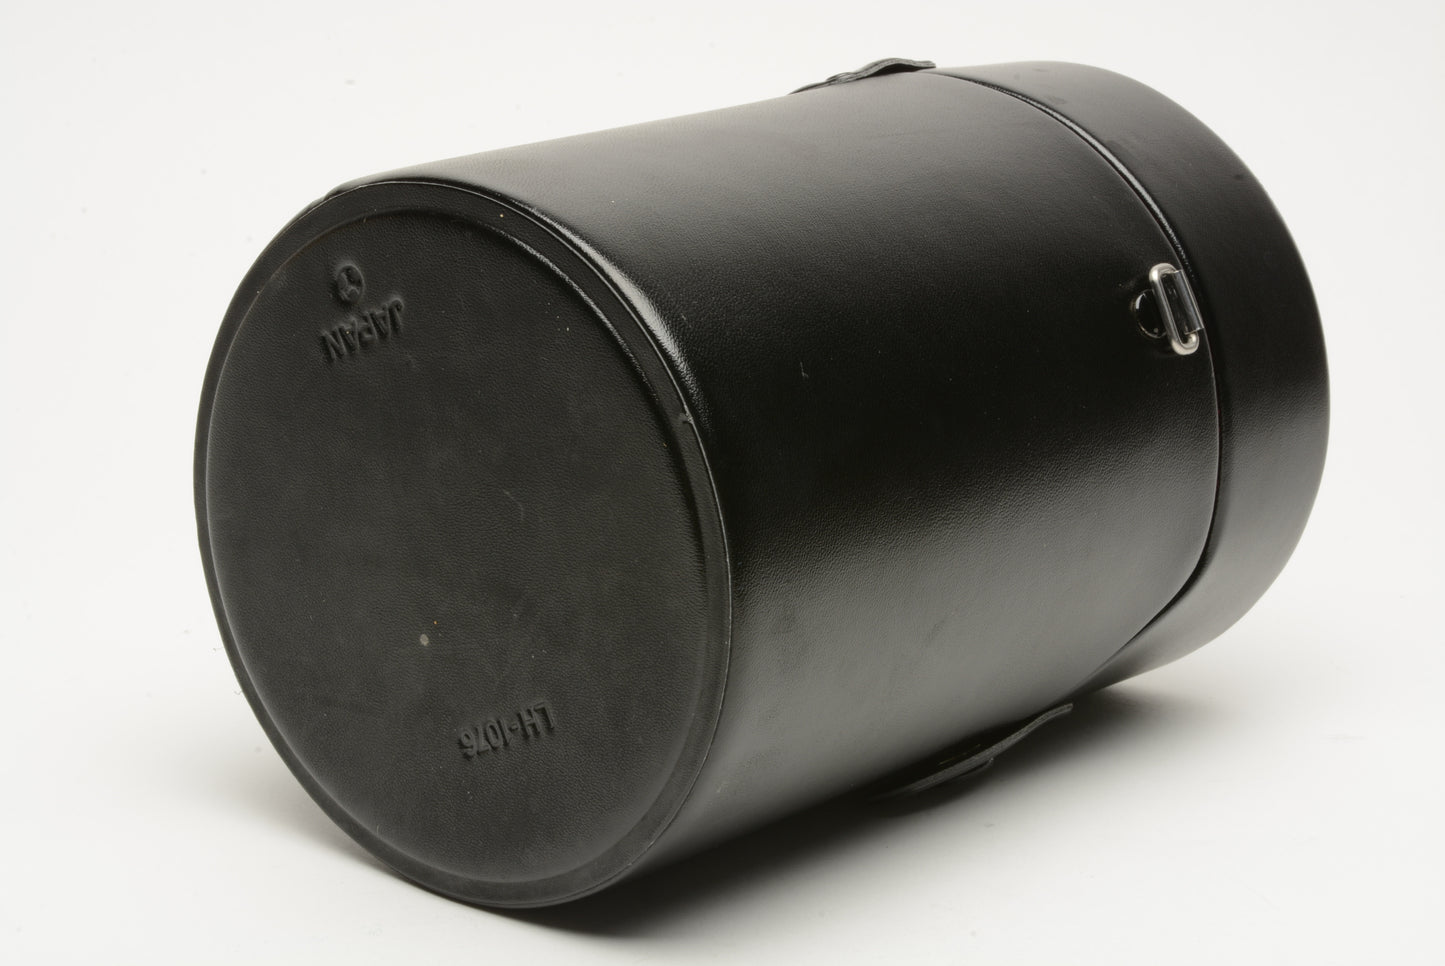 Minolta LH-1076 Hard lens case ~4.5x6.5" for Maxxum 28-70mm f2.8 0r 500mm f8 lenses